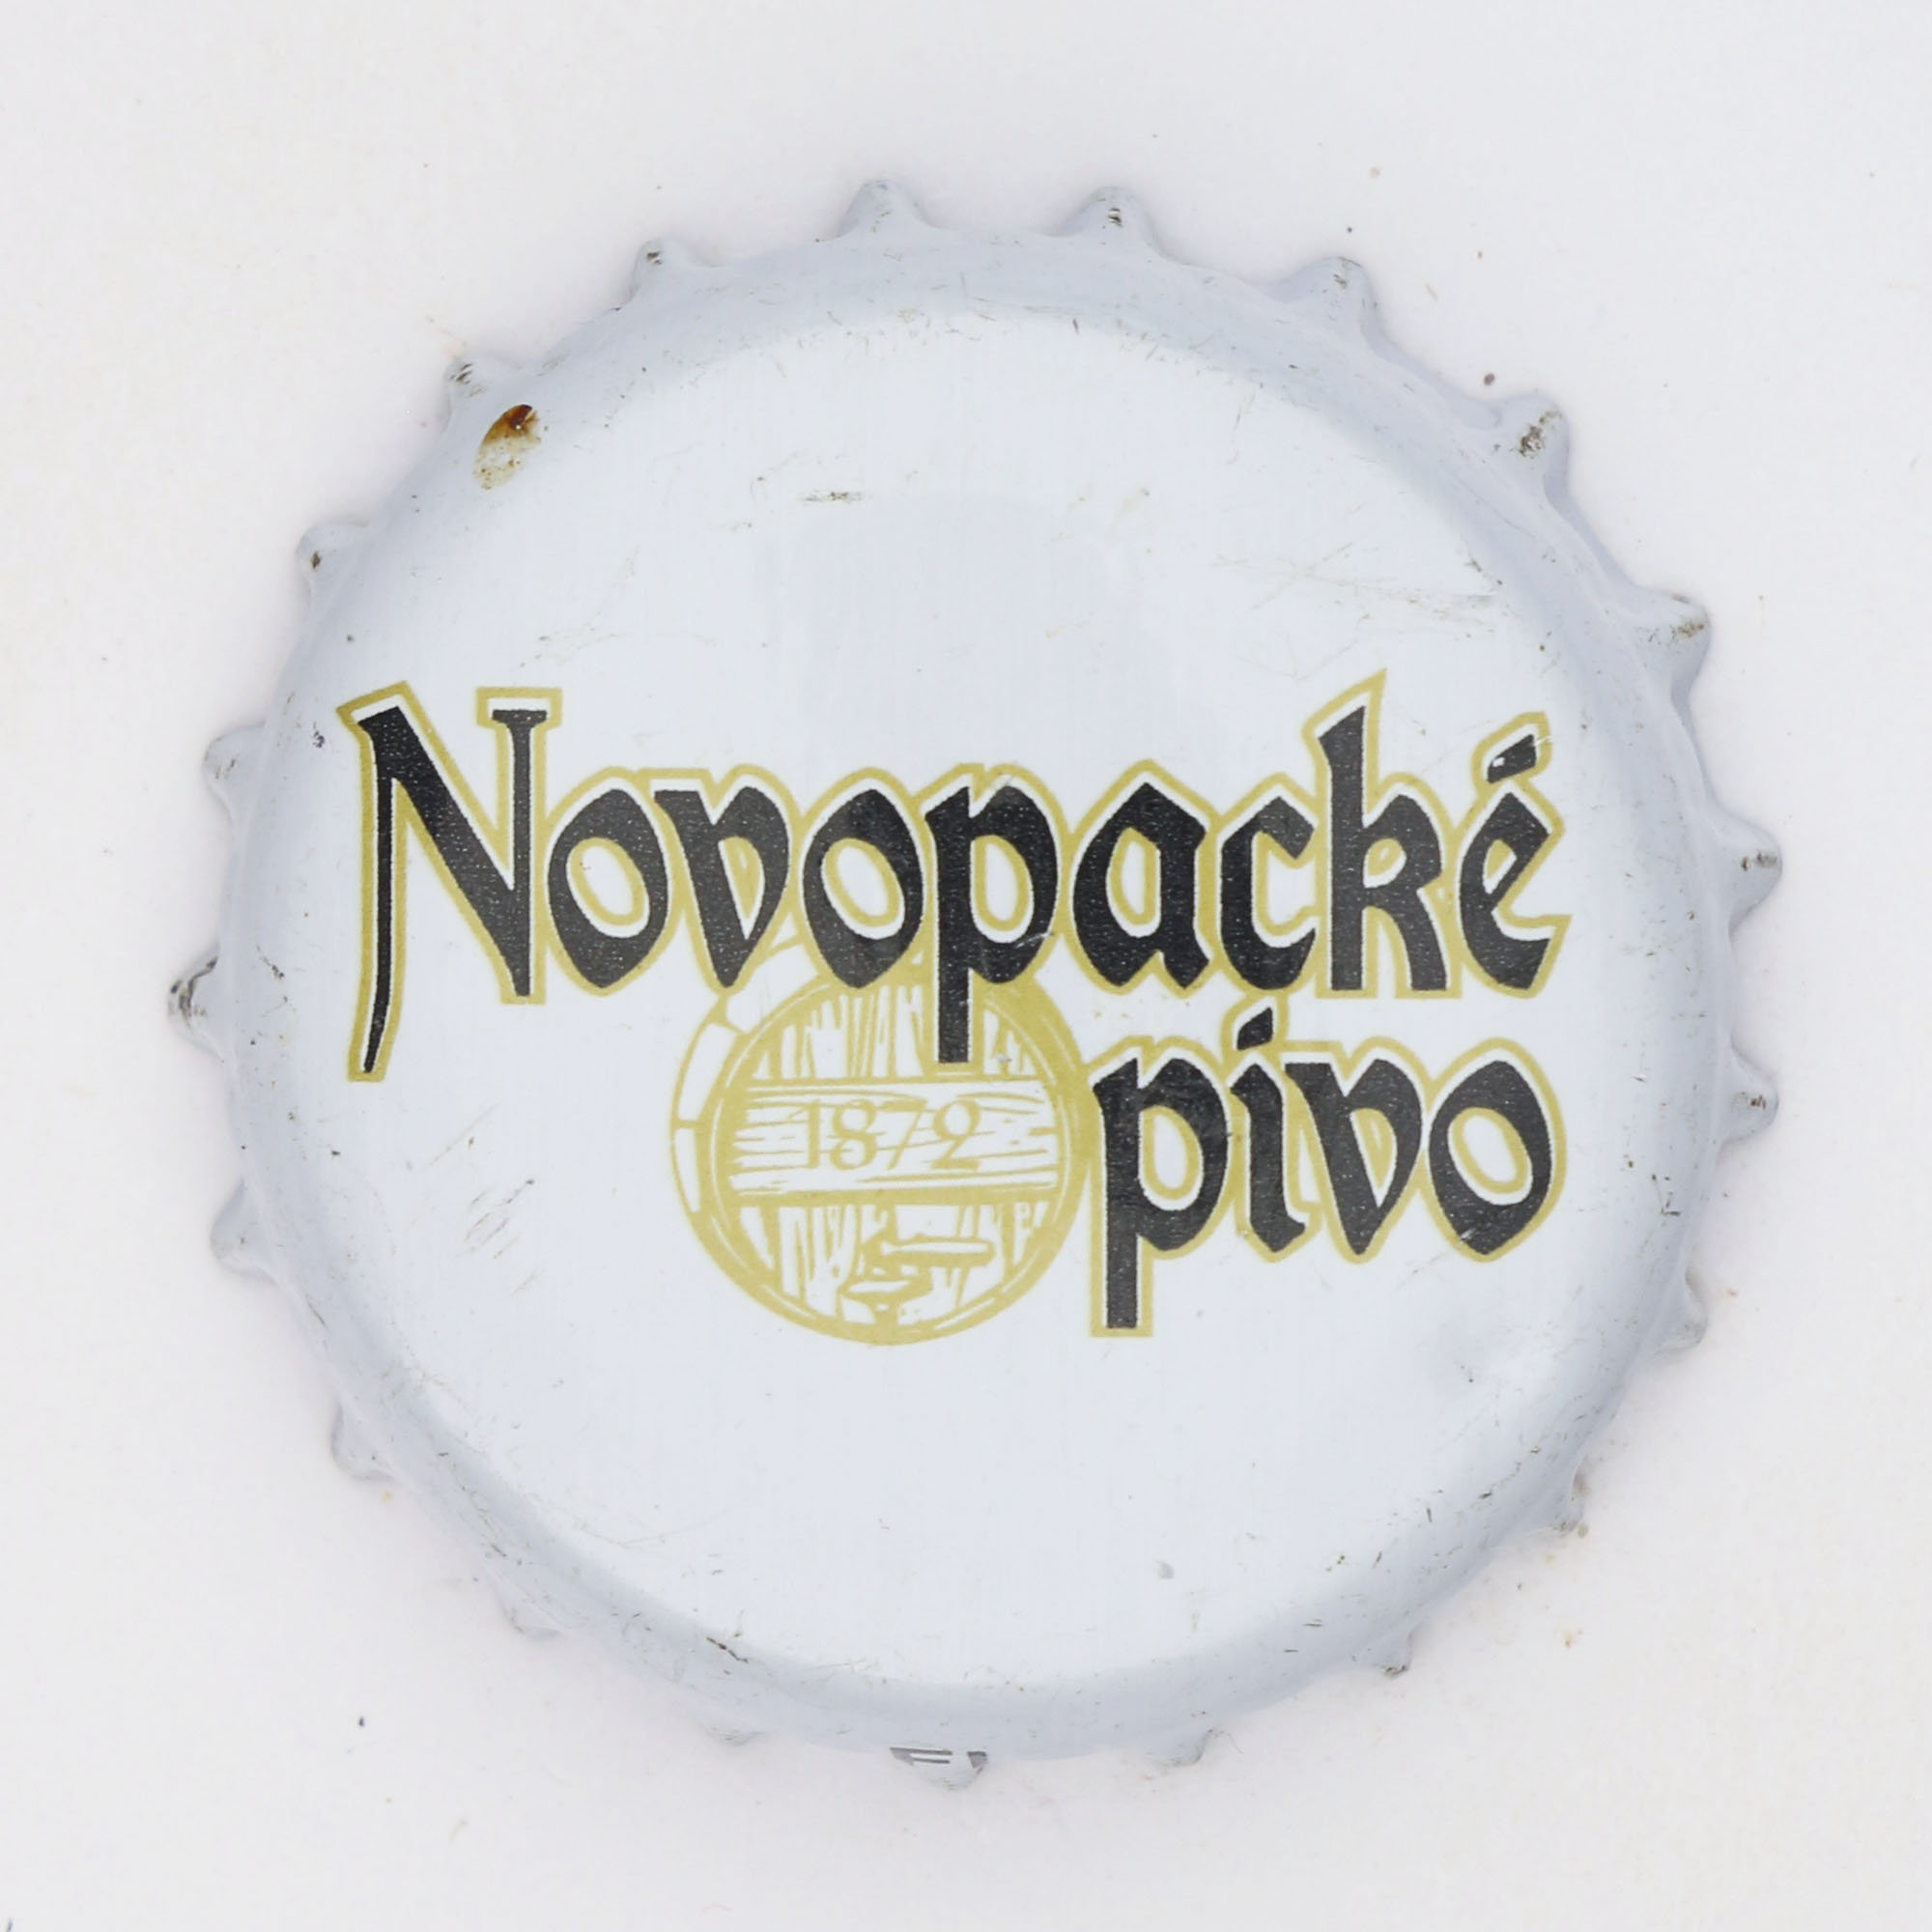 Novopacké Pivo